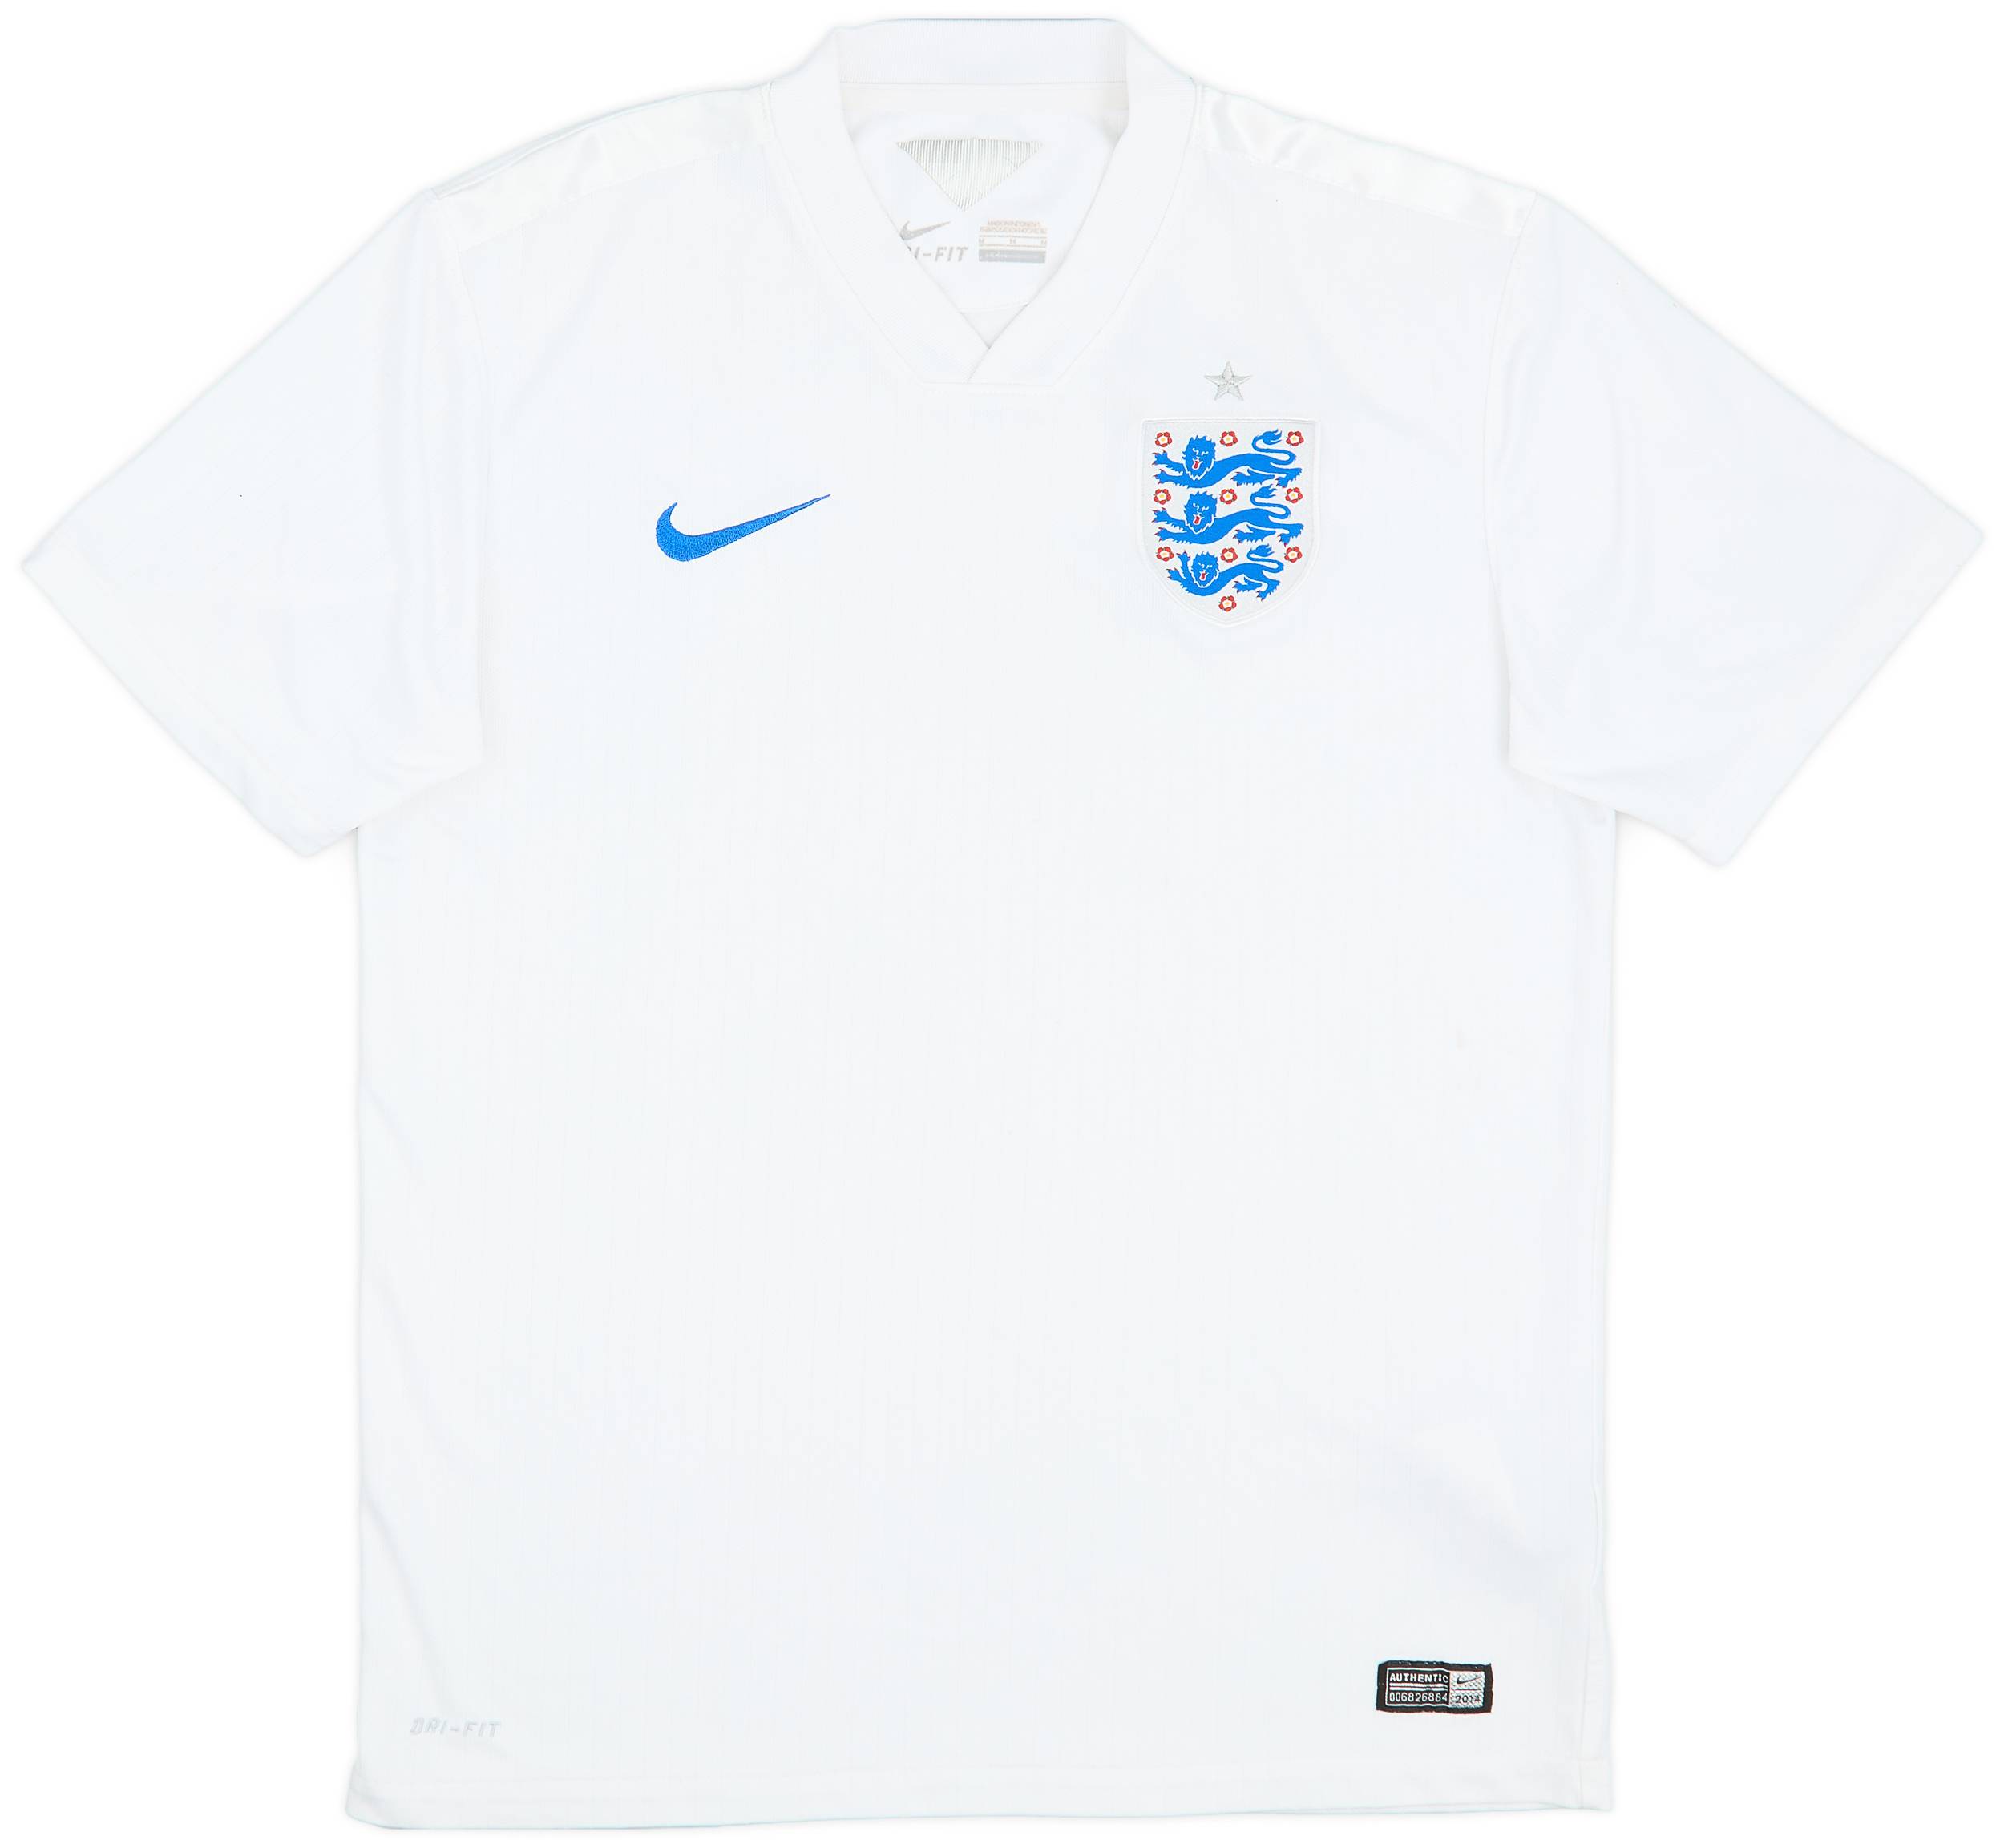 2014-15 England Home Shirt - 5/10 - (M)